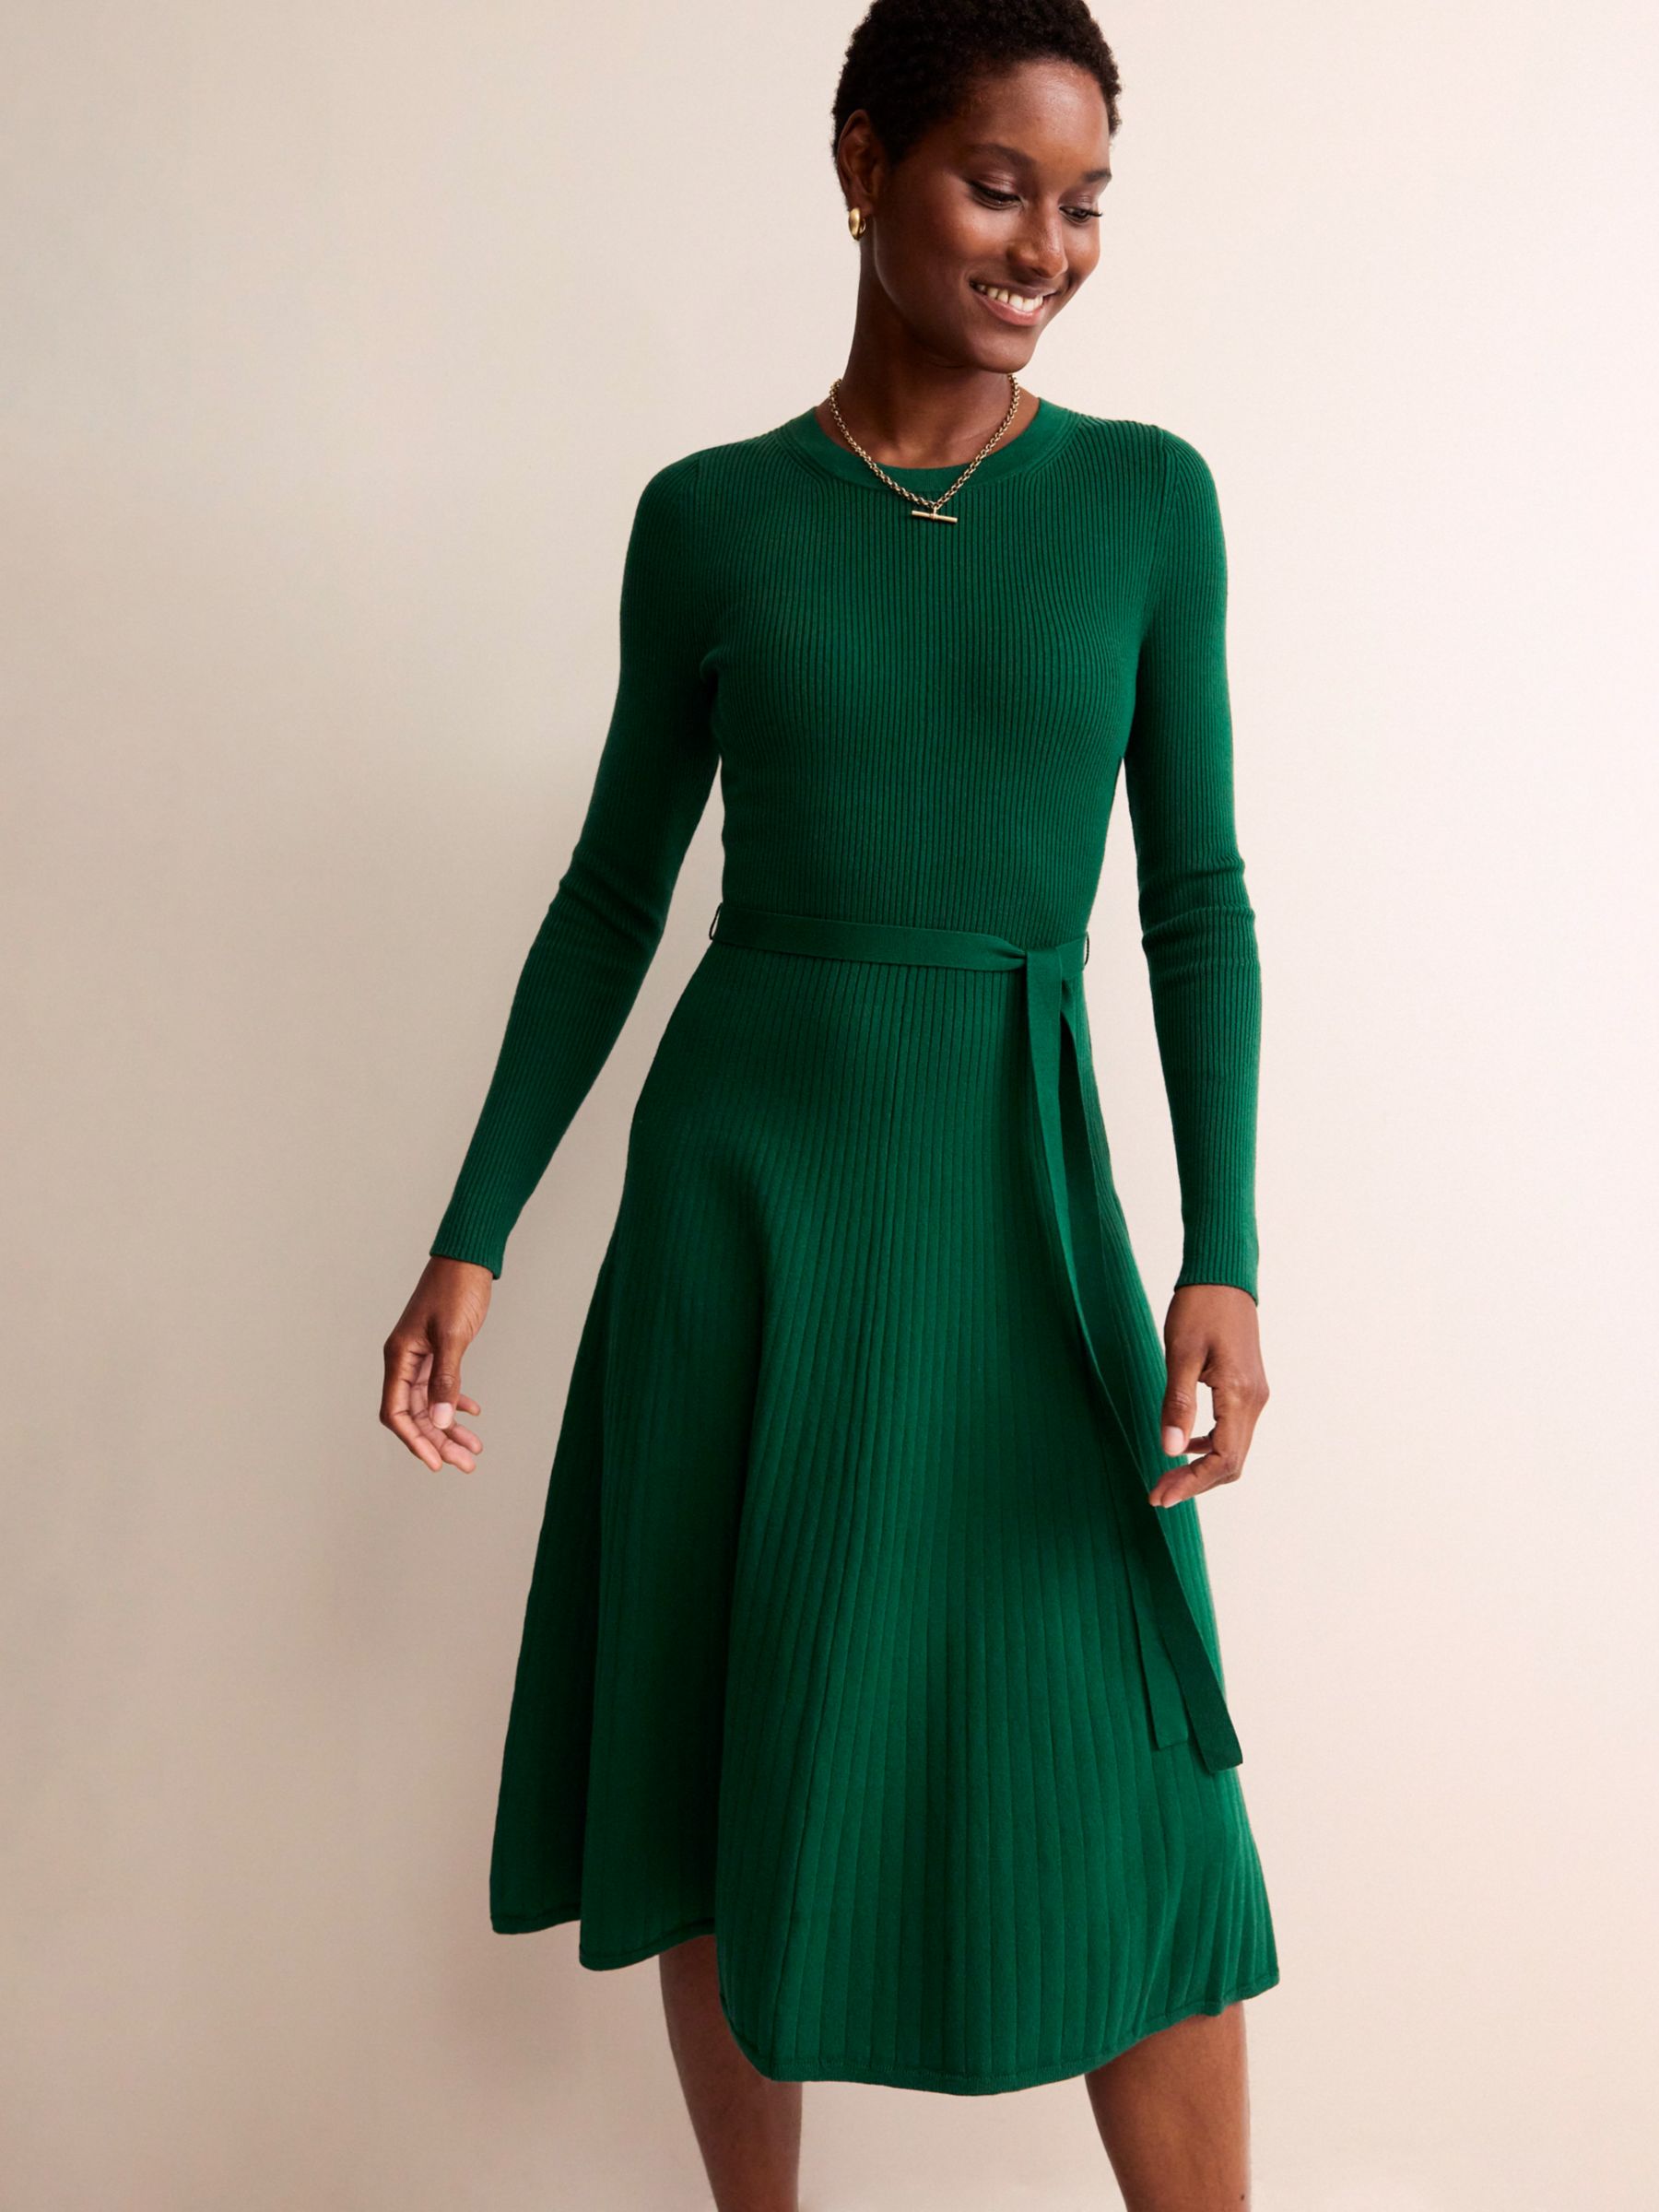 Boden Lola Rib Knit Midi Dress, Emerald Green, 8